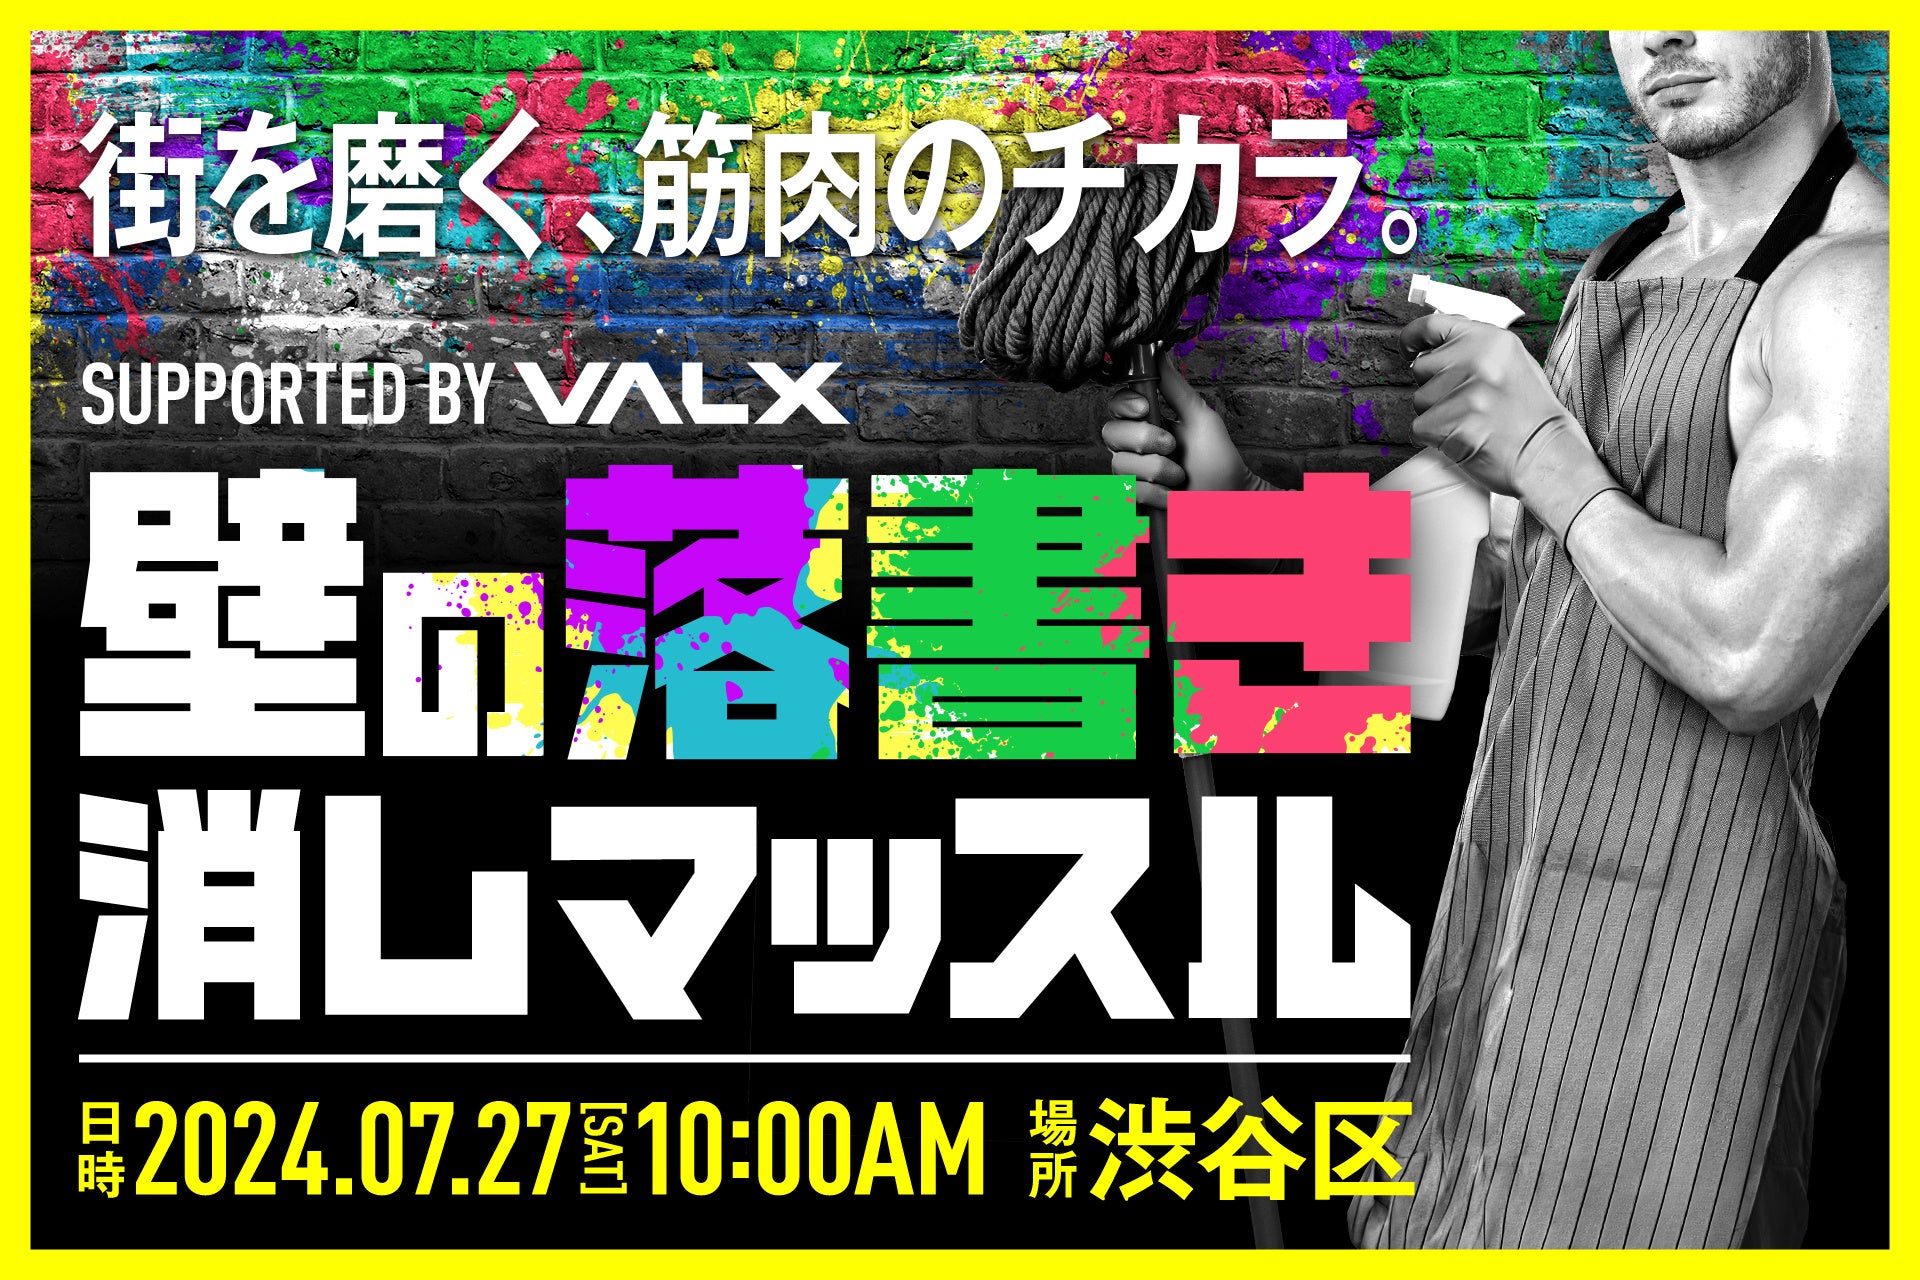 「求ム 社会貢献マッチョ」鍛え上げられたその筋肉、街を守るために使いませんか VALXが渋谷区と連携した清掃...